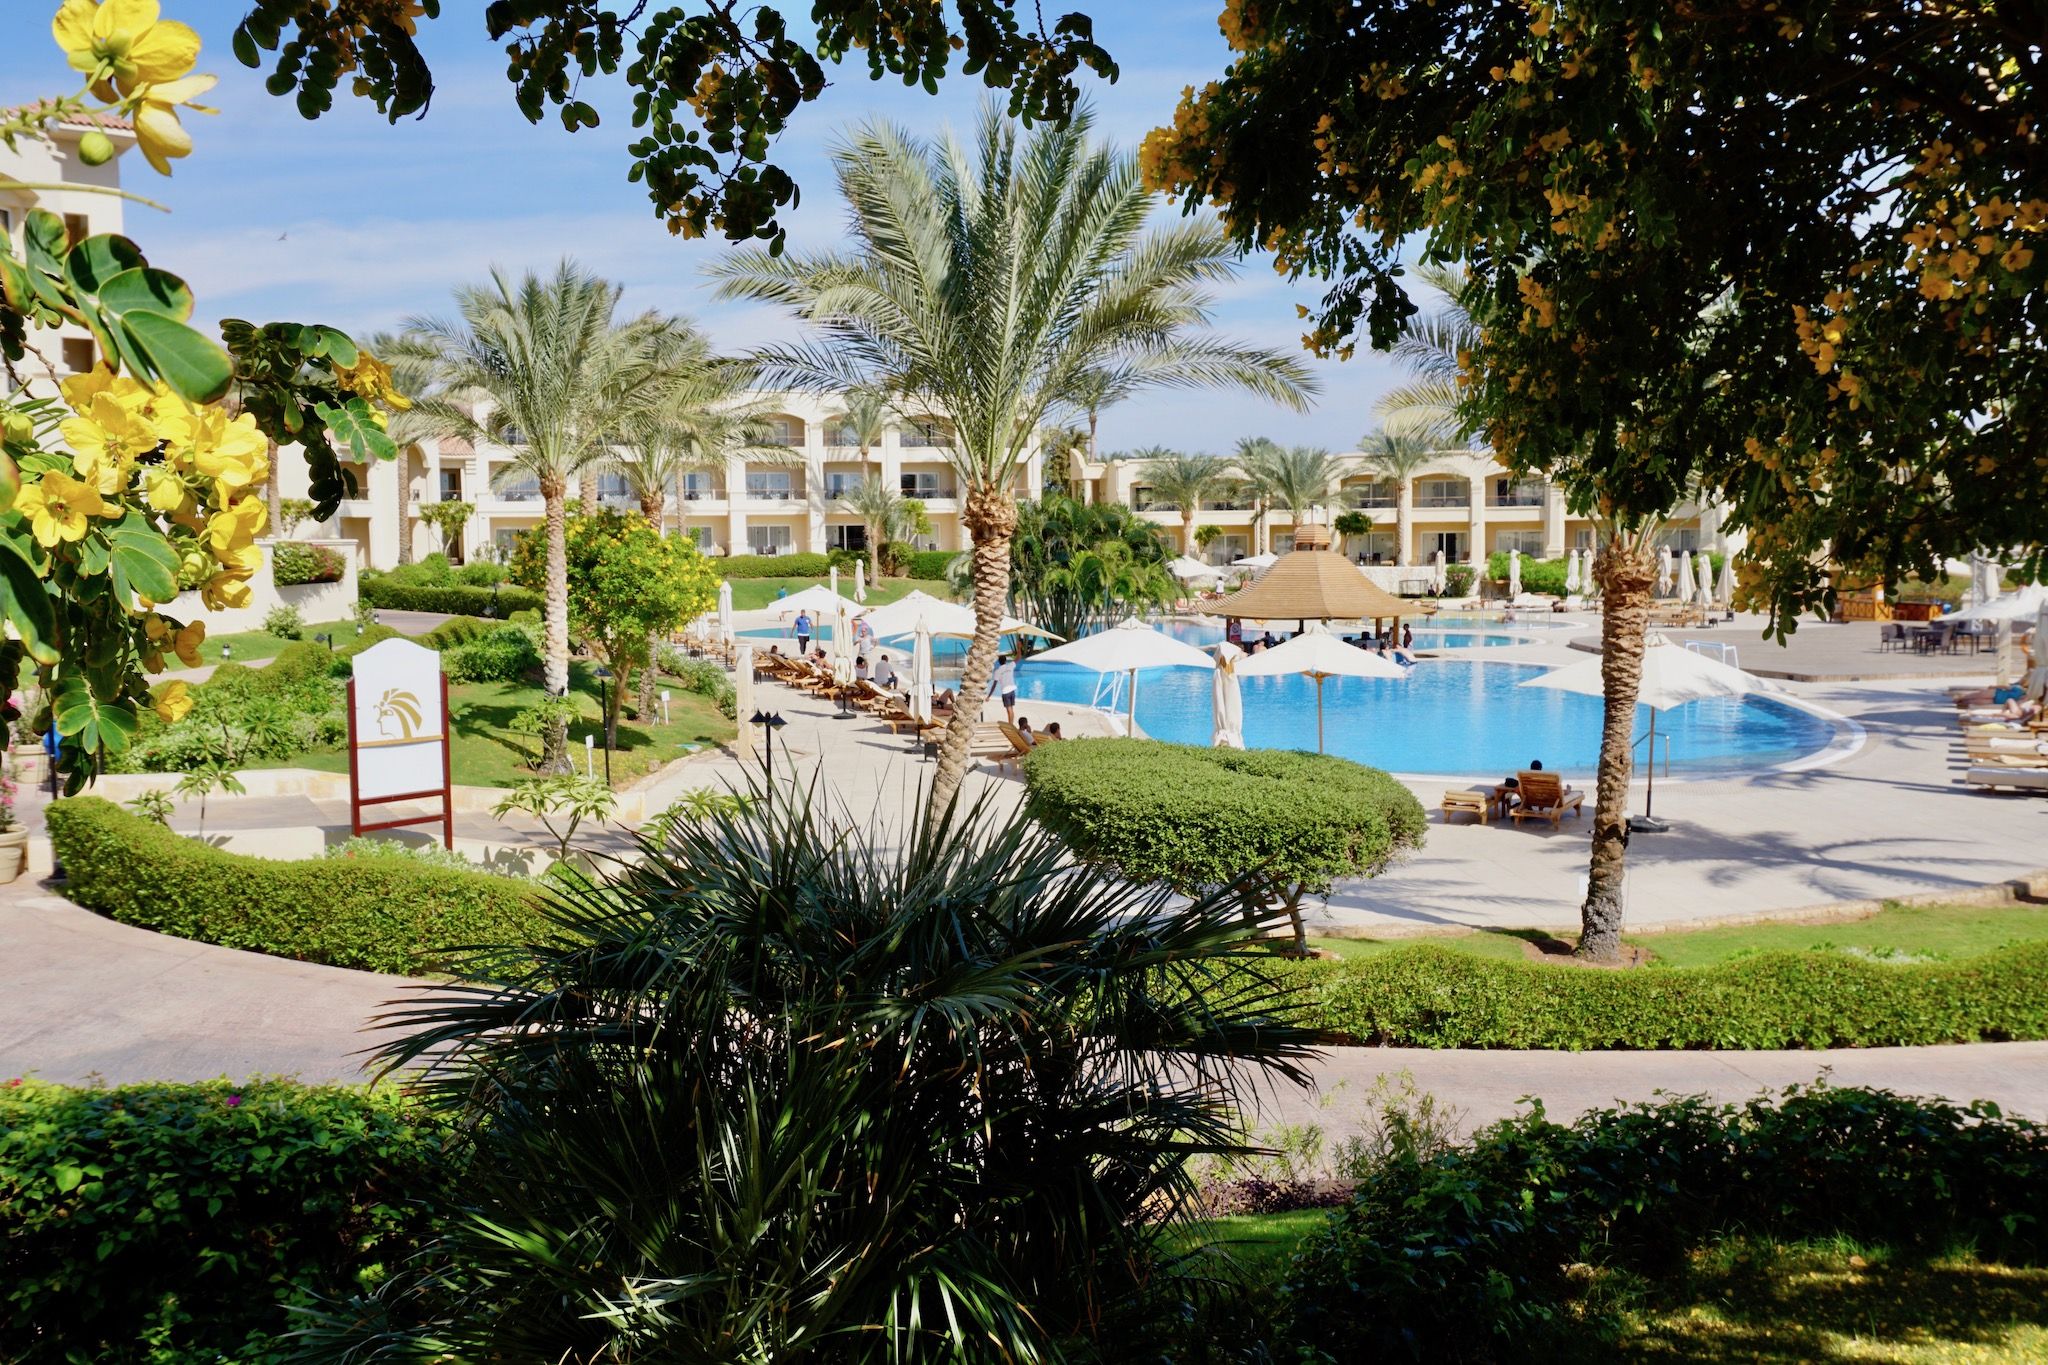 Beliebtes Urlaubsziel mit tollen Hotels: bei der Einreise kann ein E-Visum für Ägypten online beantragt werden. Foto: Sascha Tegtmeyer